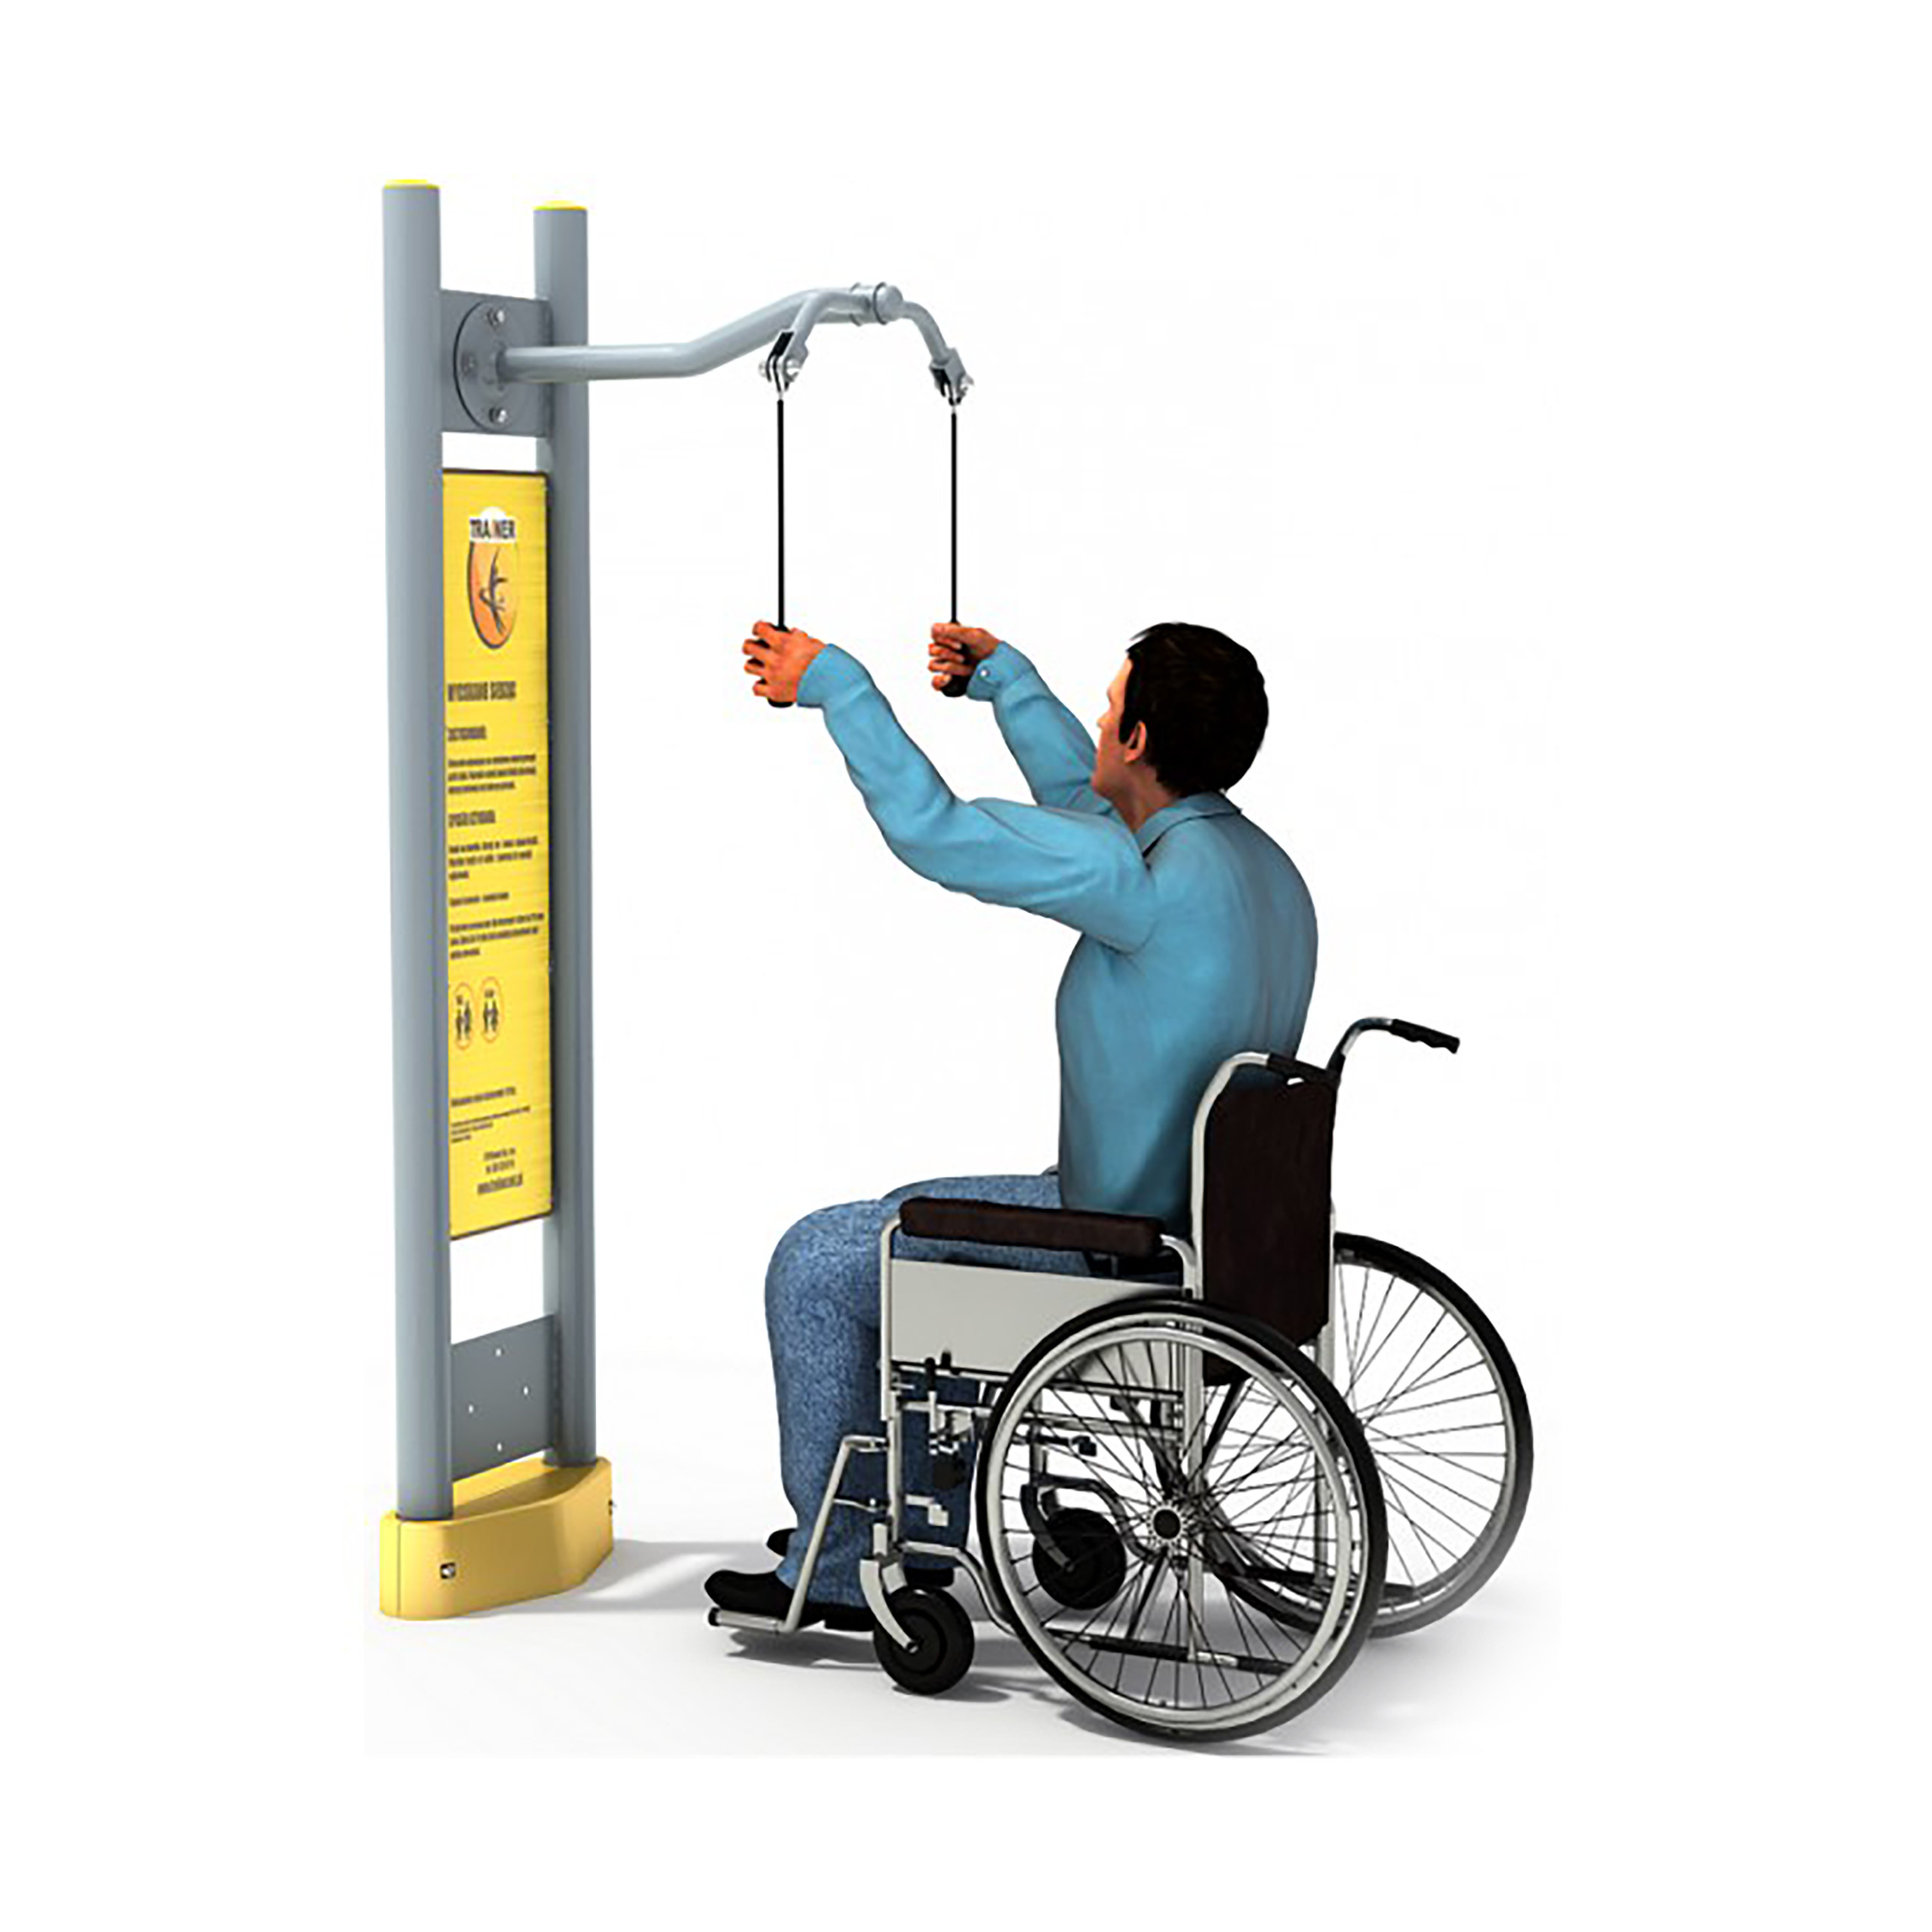 Macchinario per l'allenamento delle braccia disabile